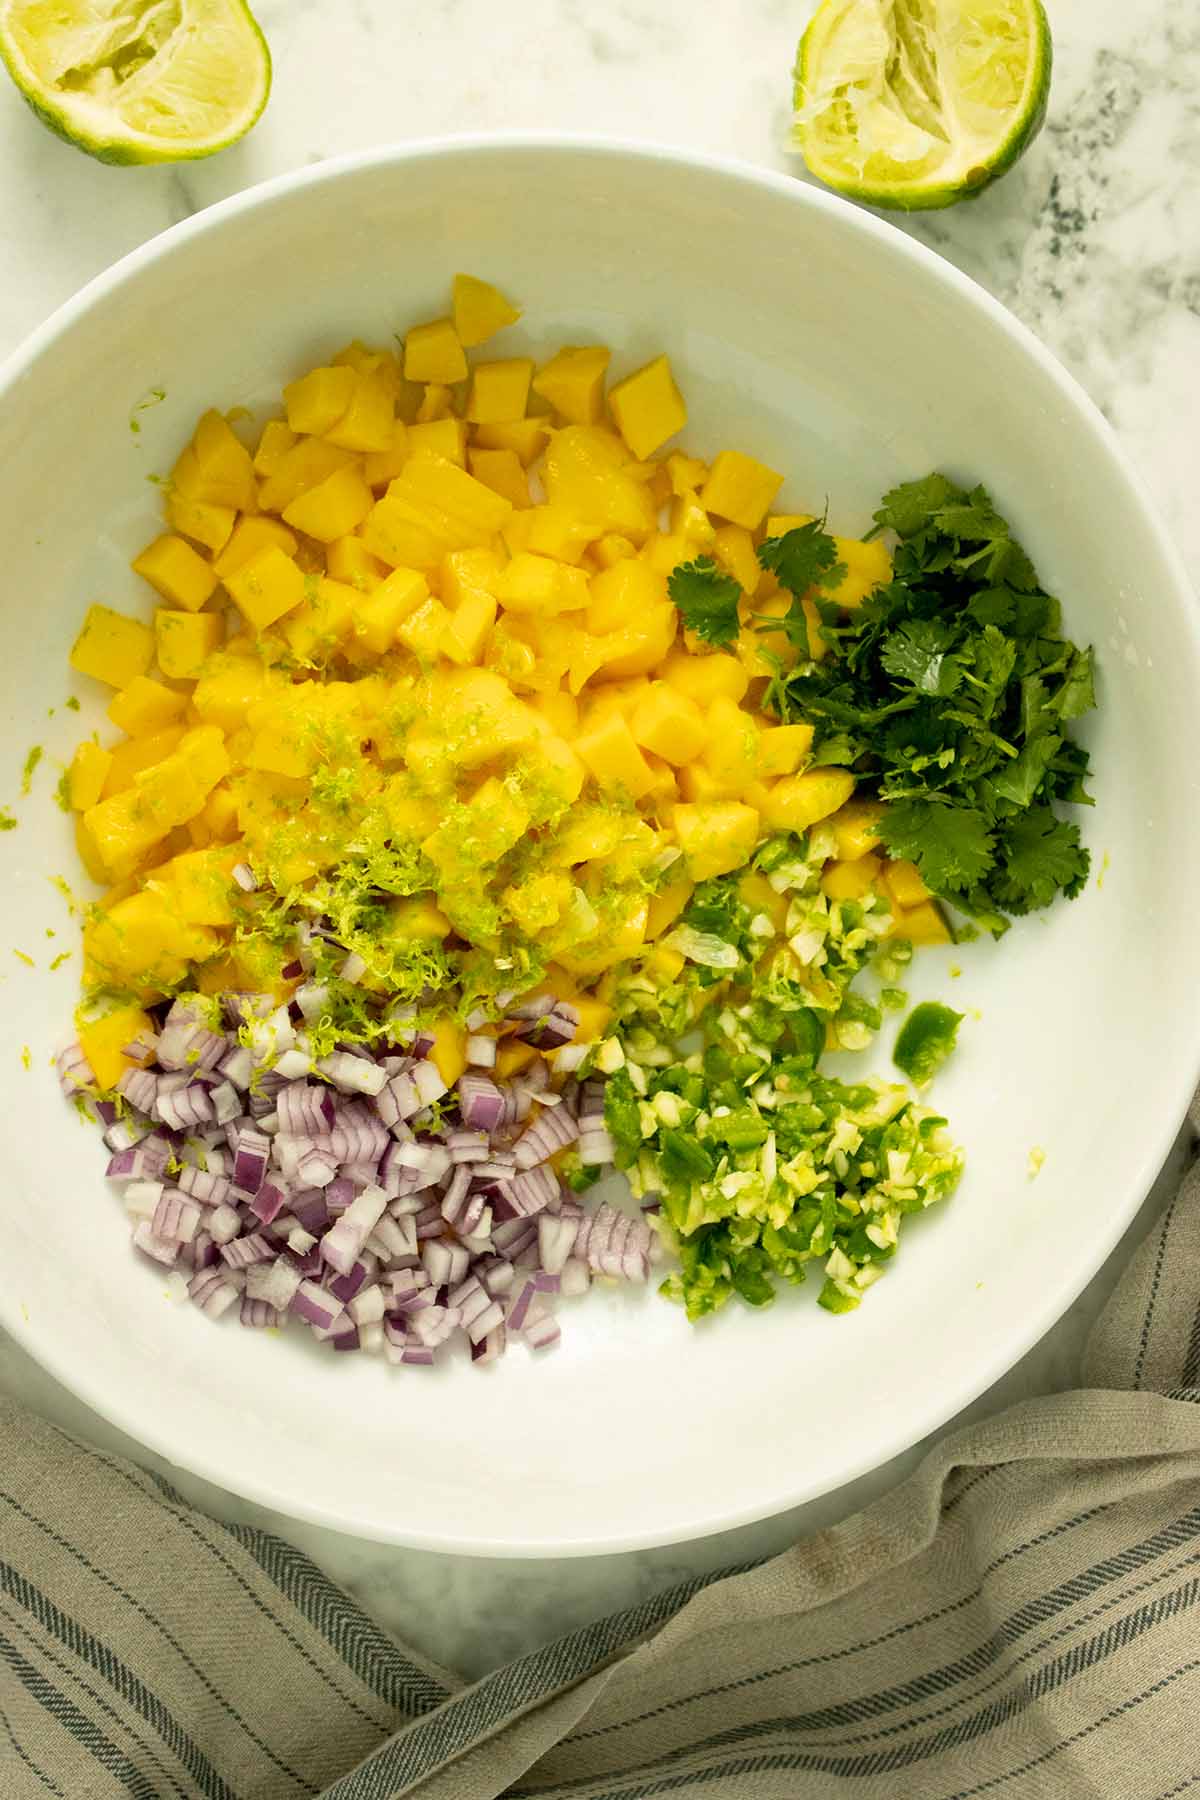 mango salsa ingredients in a large, white mixing bowl